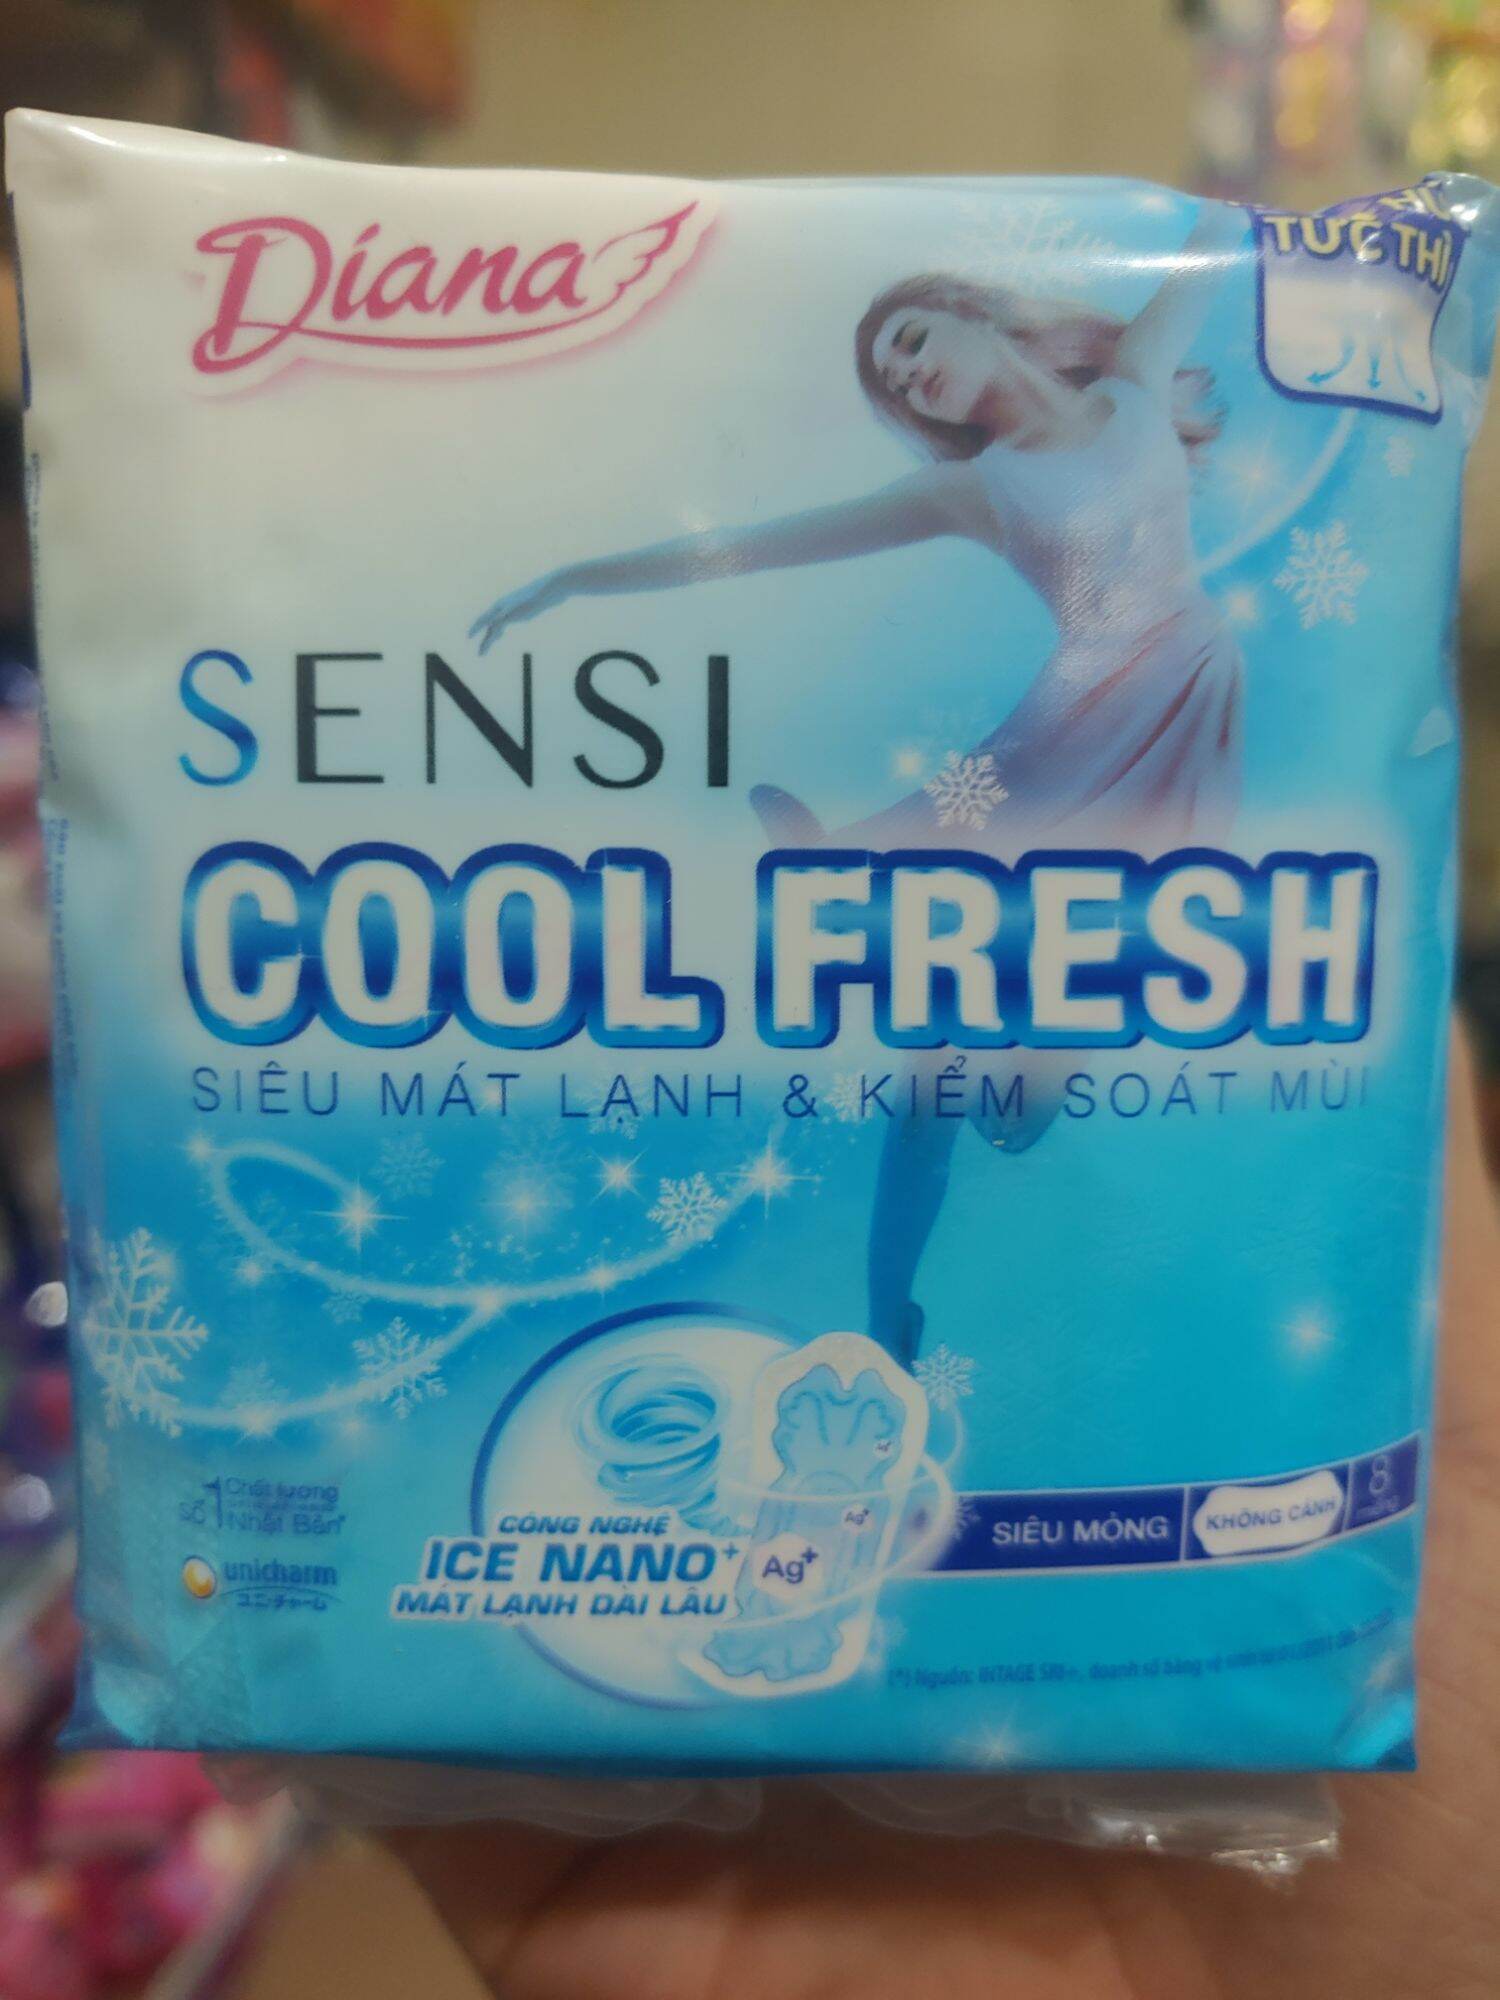 Băng vệ sinh Diana sensi cool fresh siêu mỏng